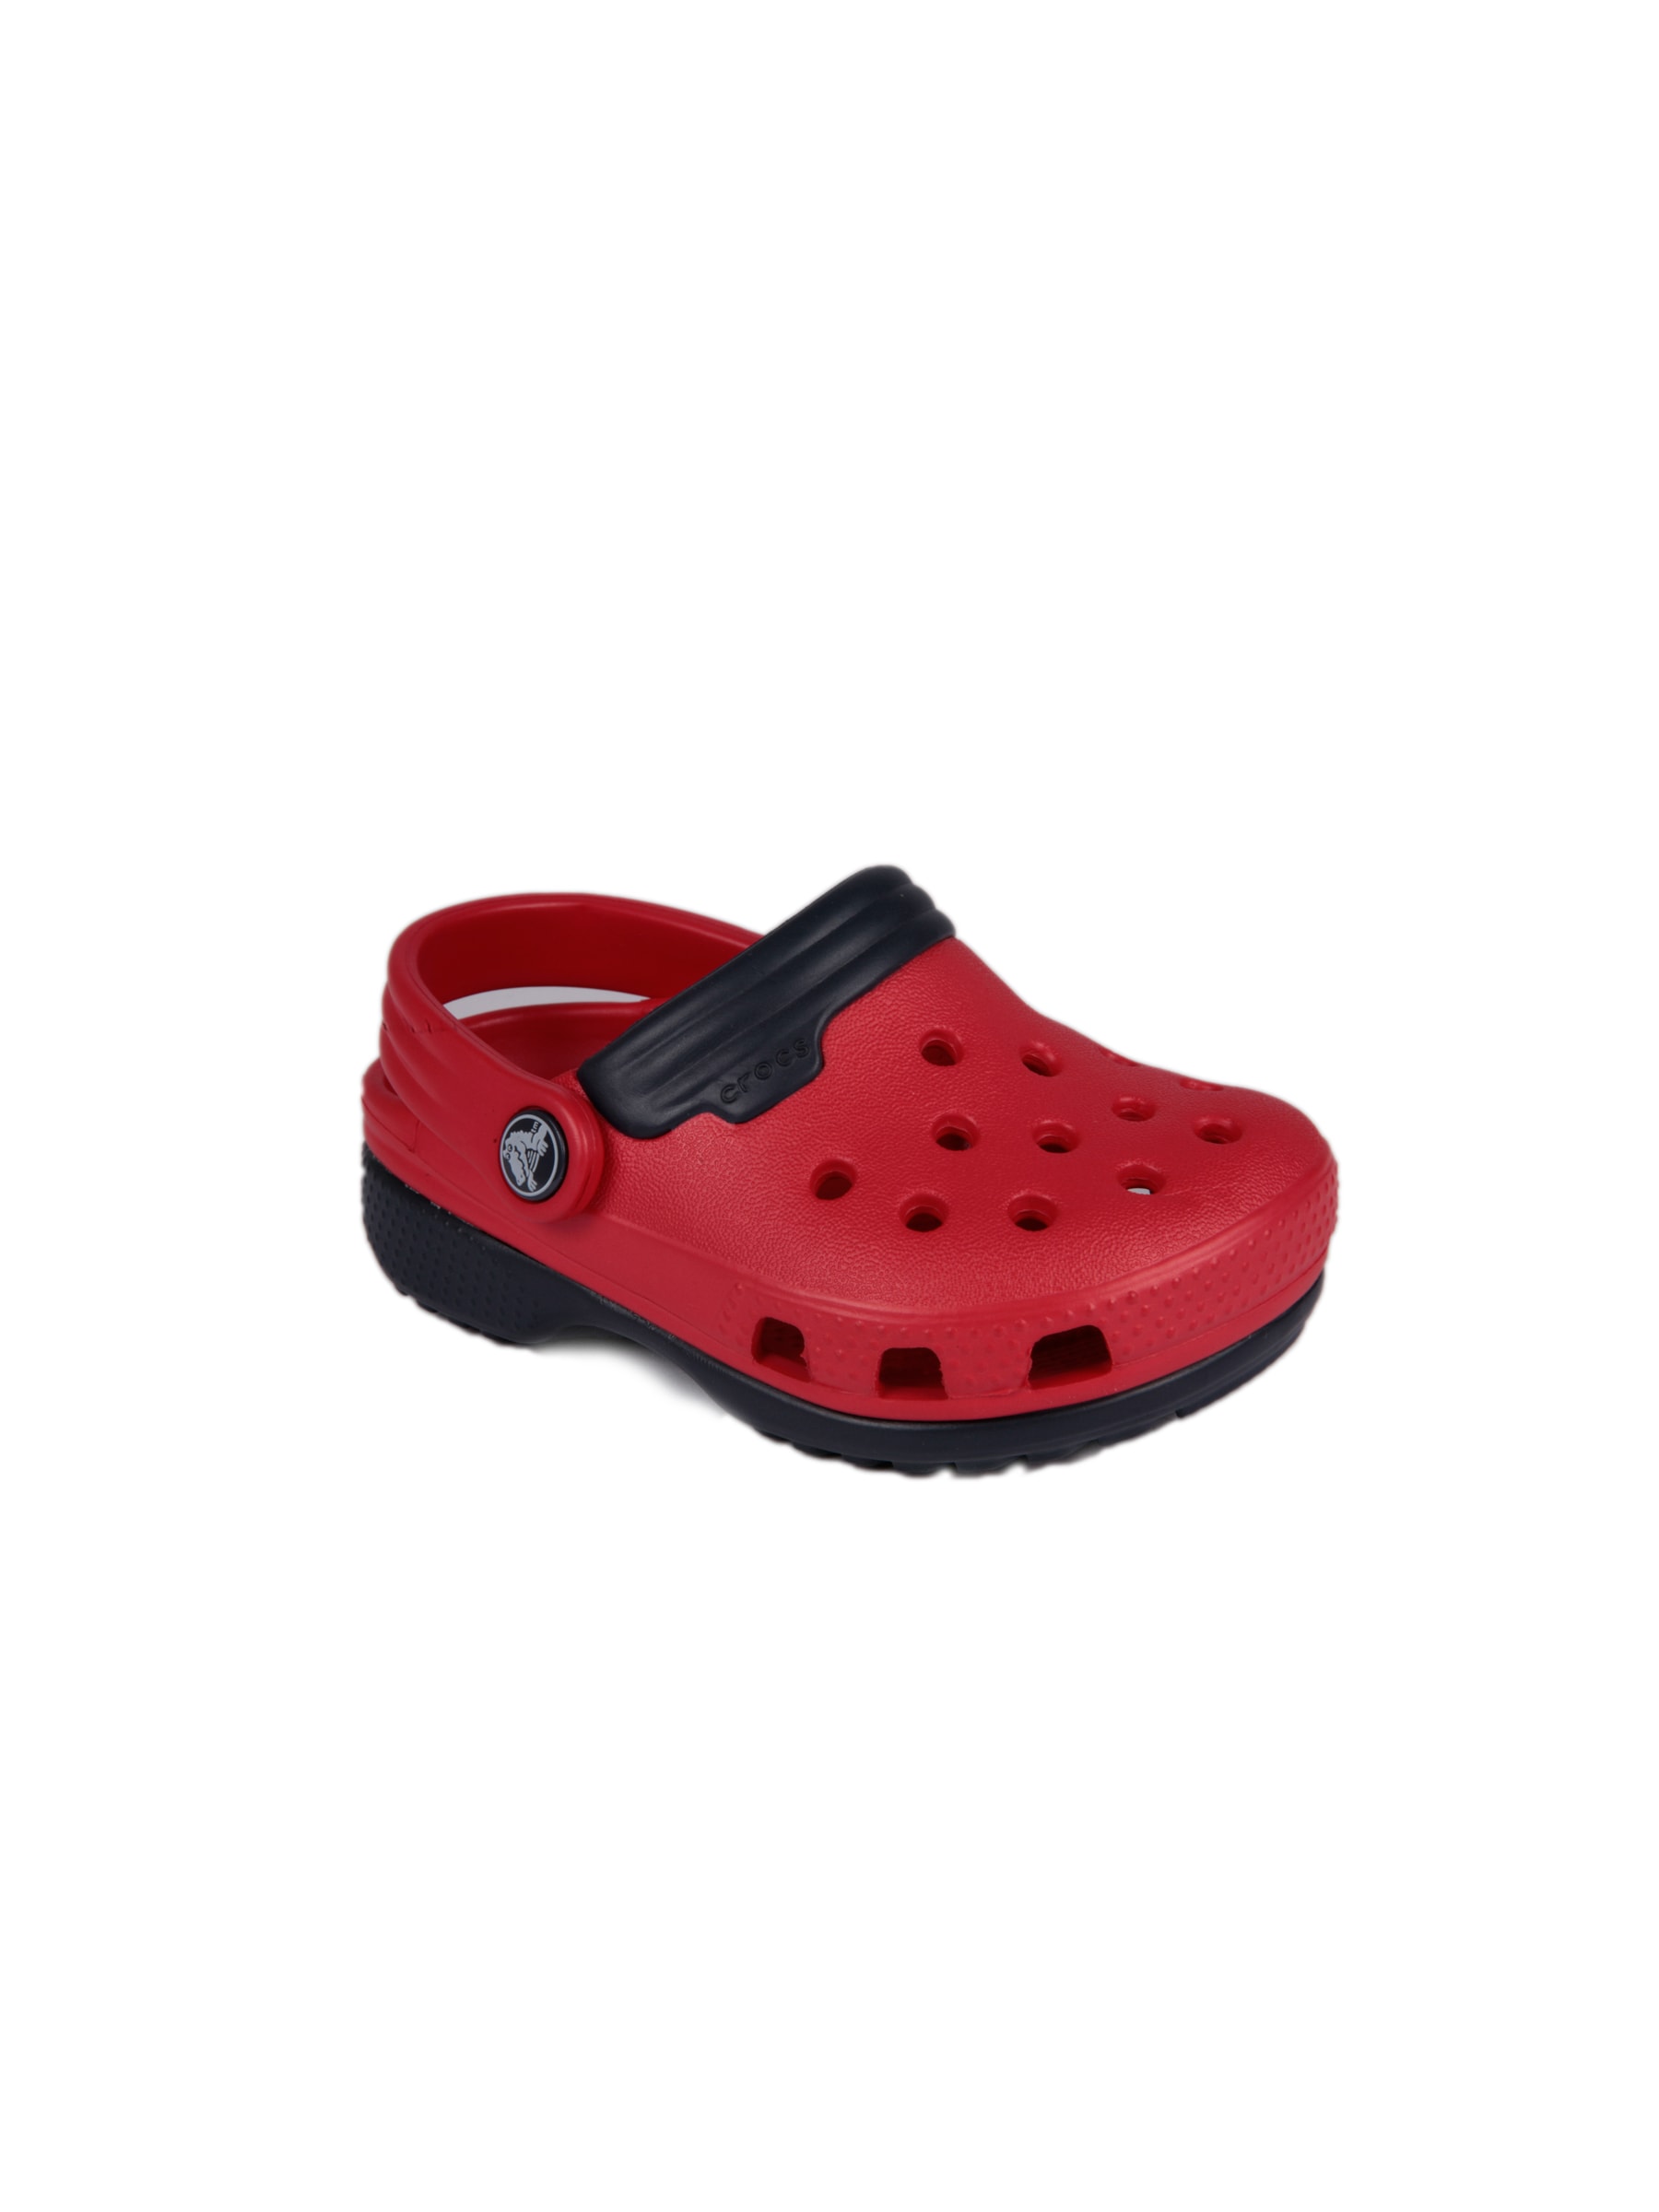 Crocs Kids Duet Red Floater